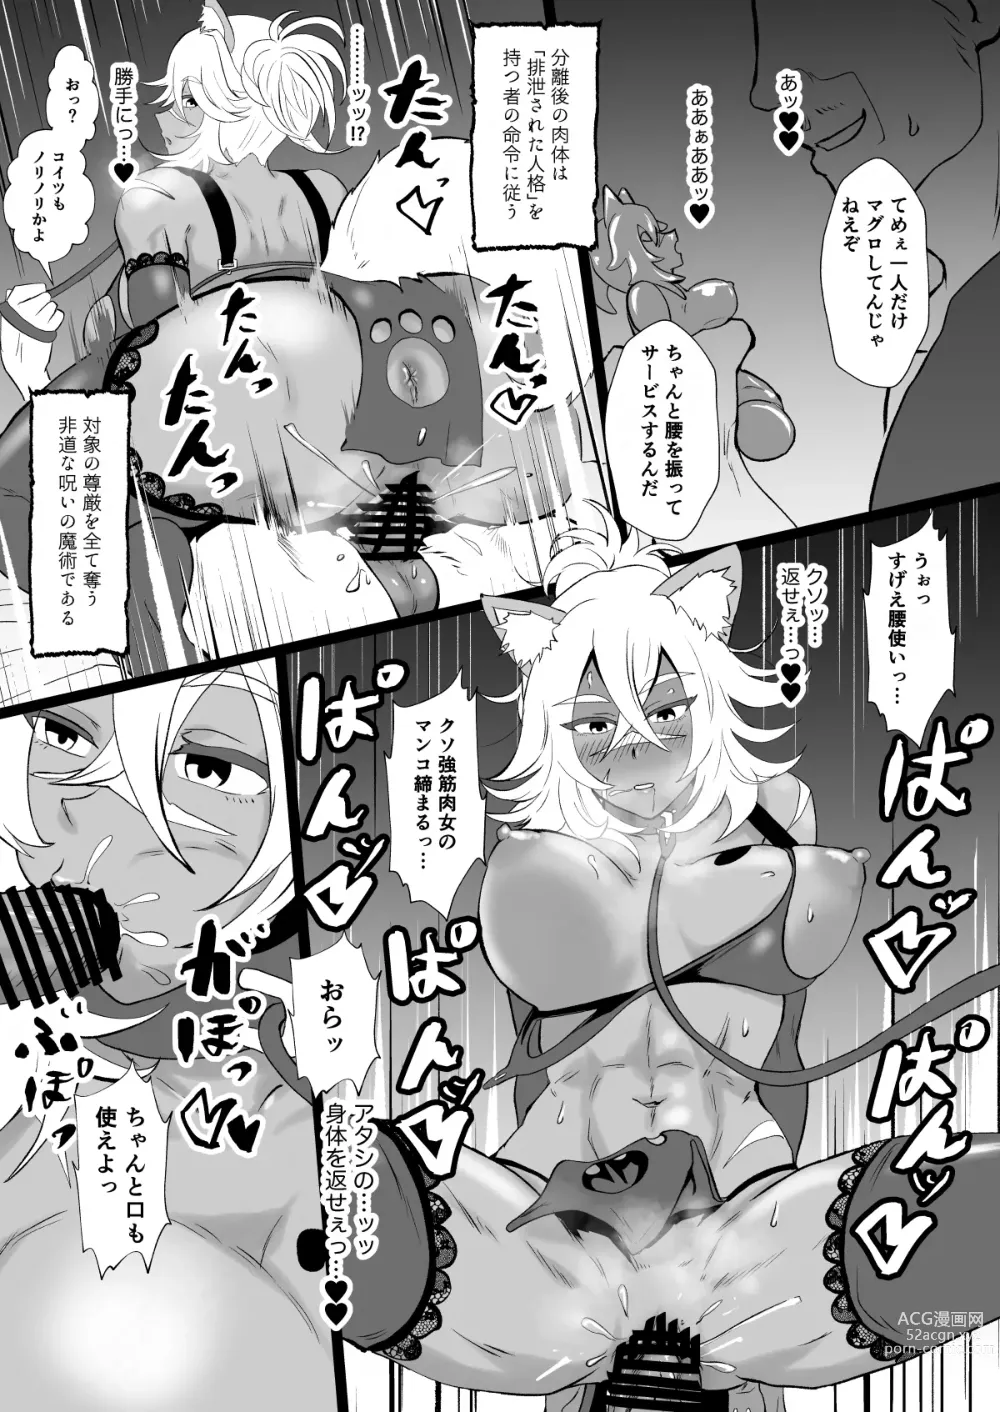 Page 16 of doujinshi Jinkaku Haisetsu de Kuso Zako Touzoku ni Karada o Ubawareta Ue ni Benri ni Tsukawareta Gouken no Jorou